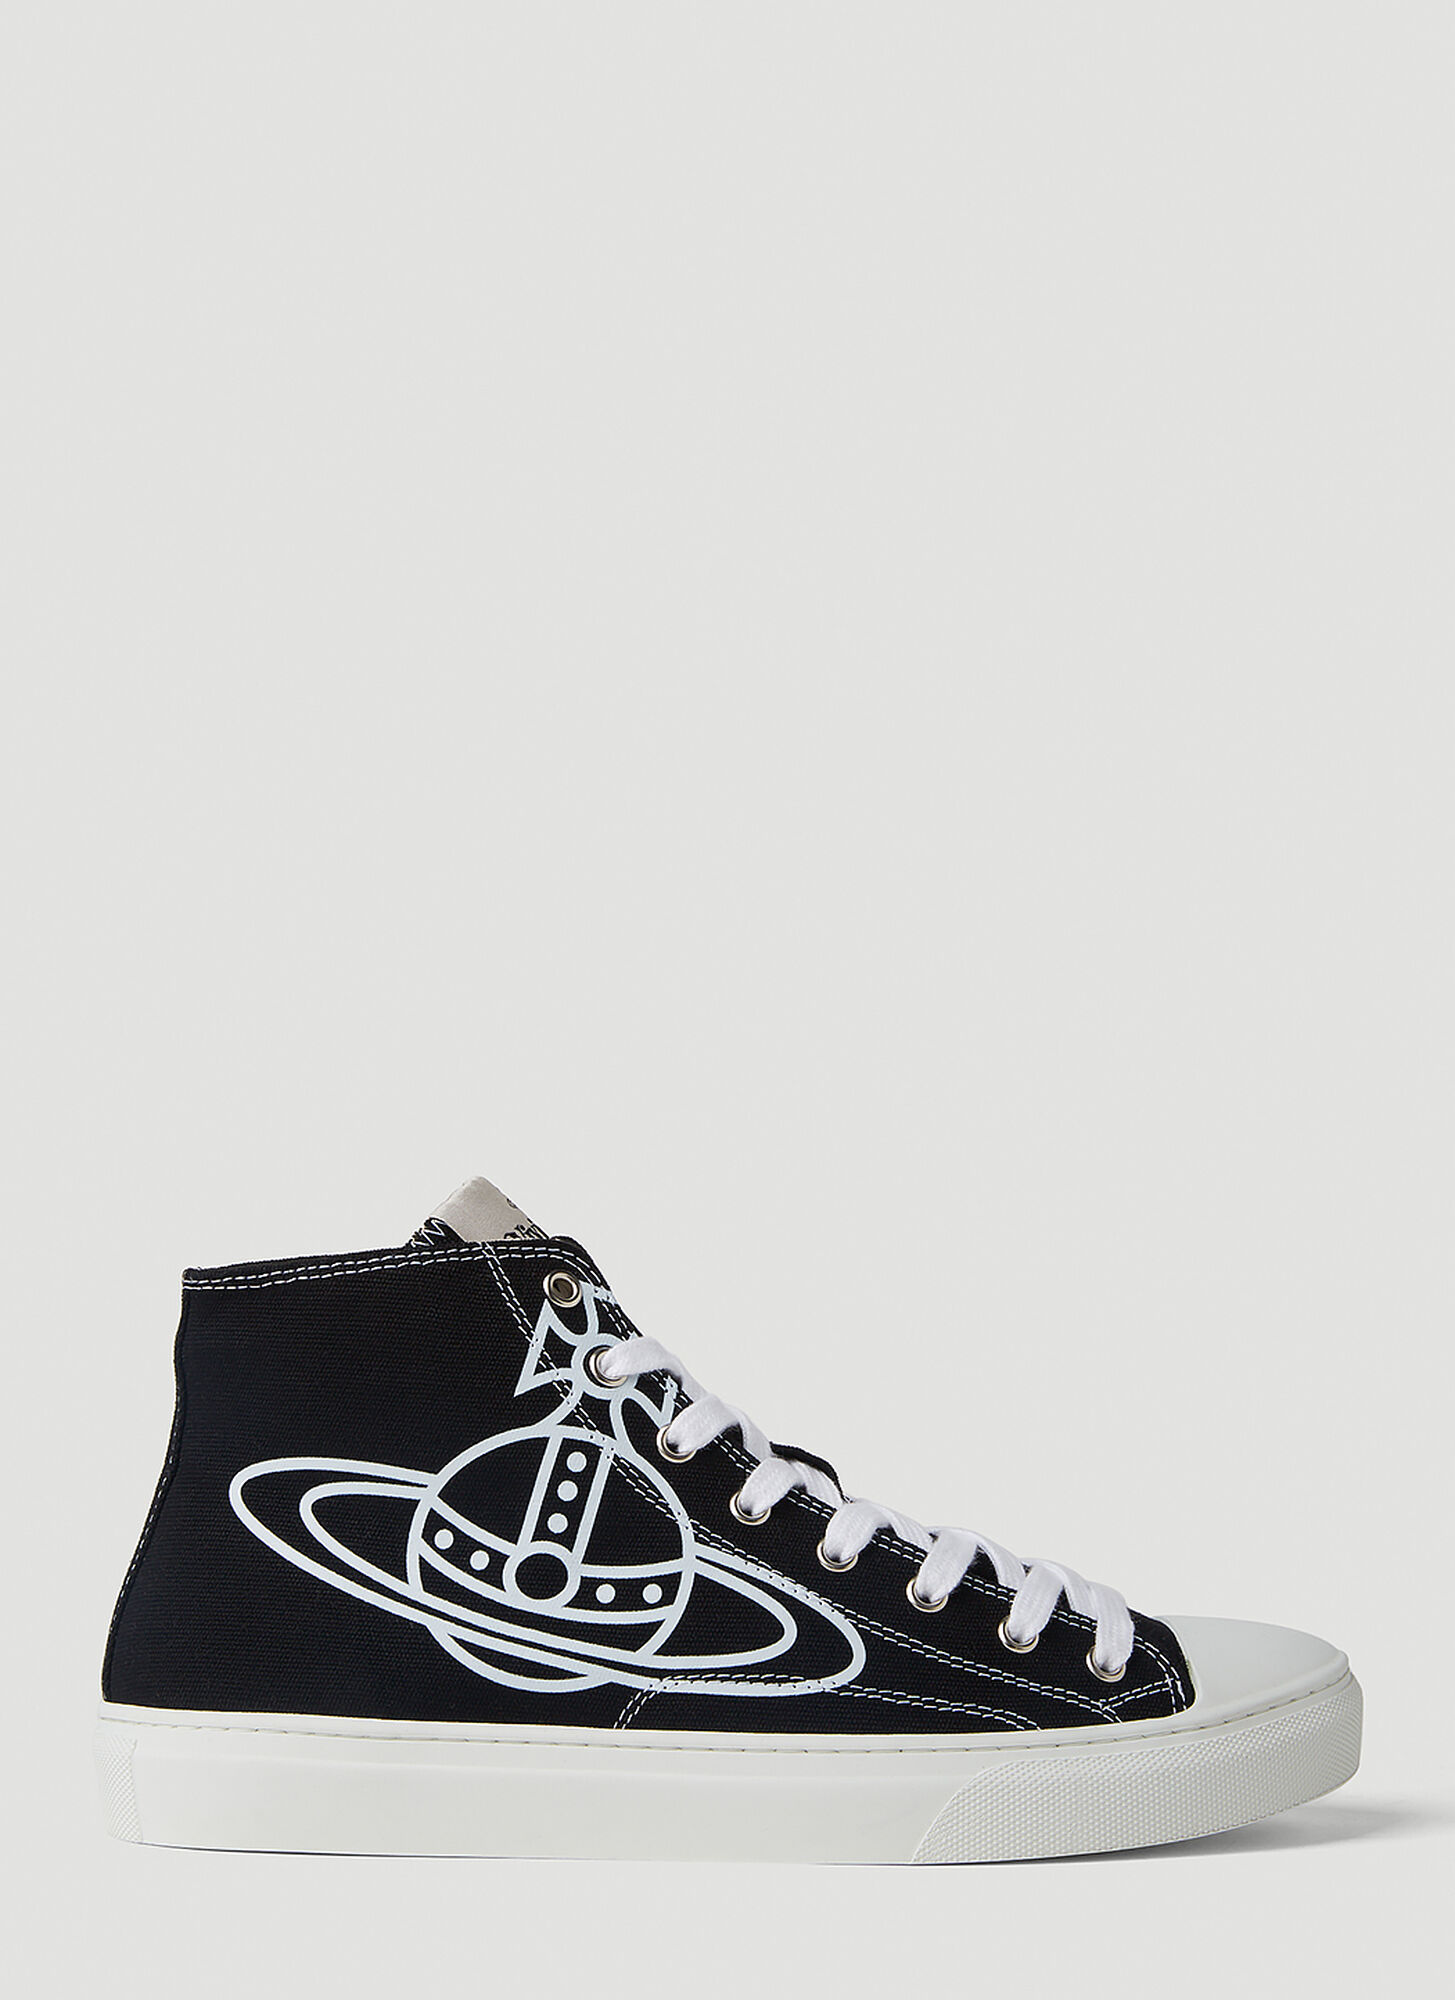 Vivienne Westwood Plimsoll Sneakers In Black